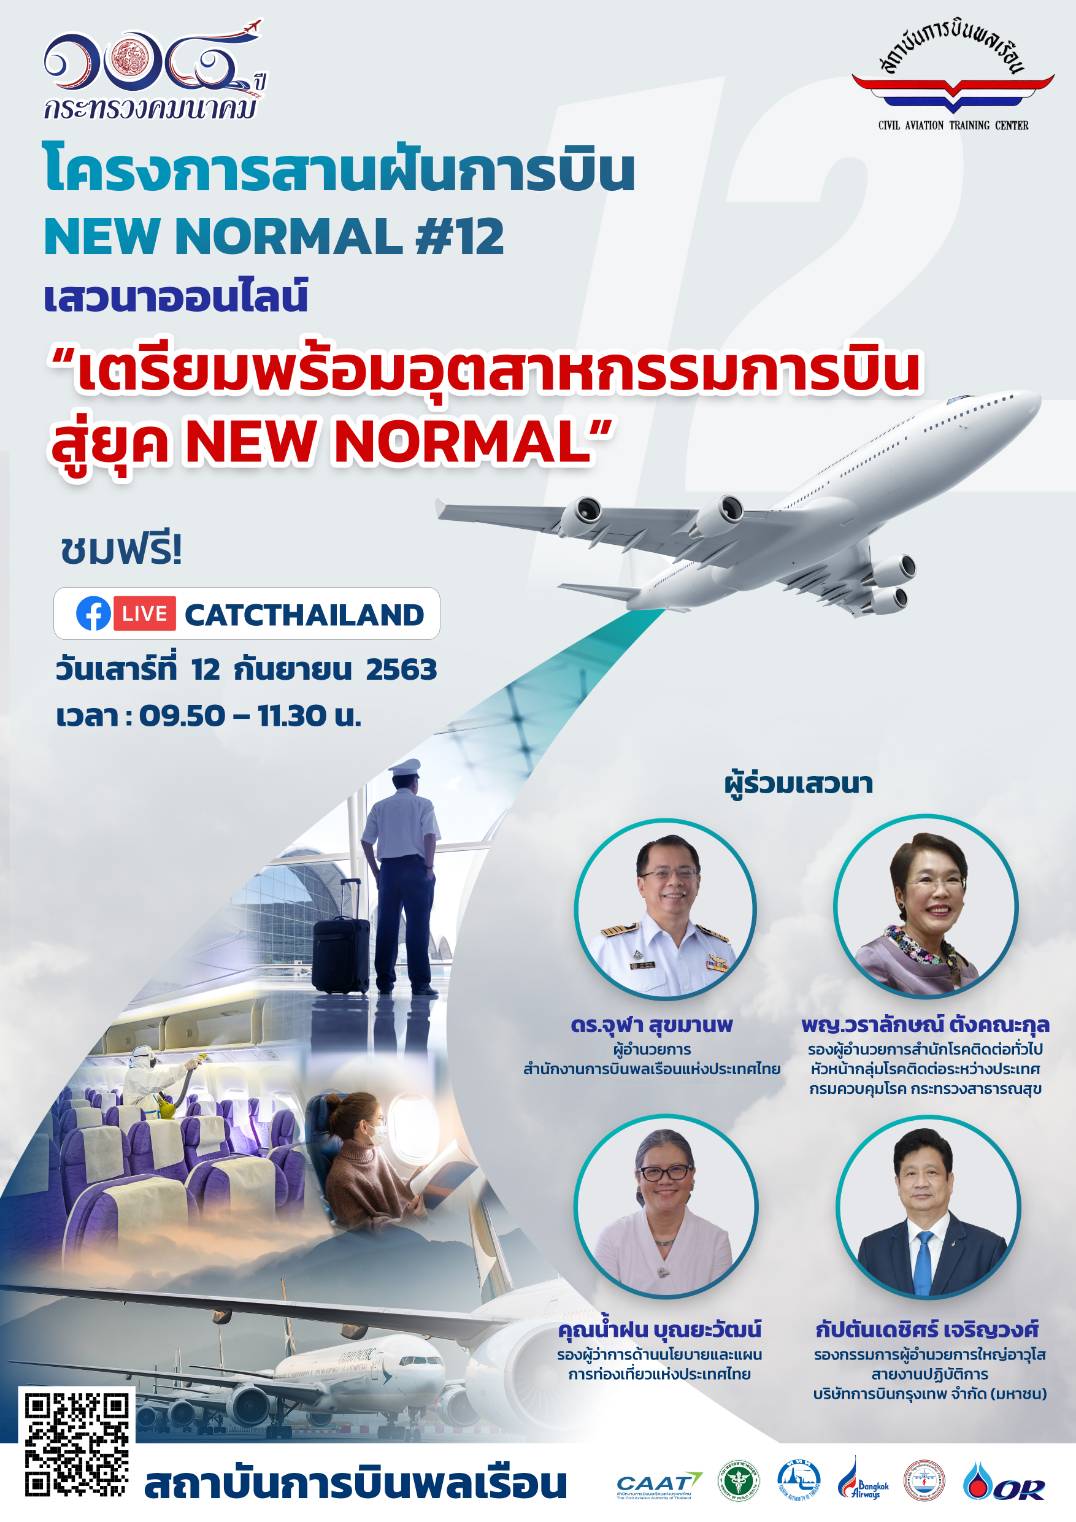 สบพ. จัดโครงการสานฝันการบิน New Normal ครั้งที่ 12 เตรียมพร้อมอุตสาหกรรมการบิน สู่ยุค New Normal